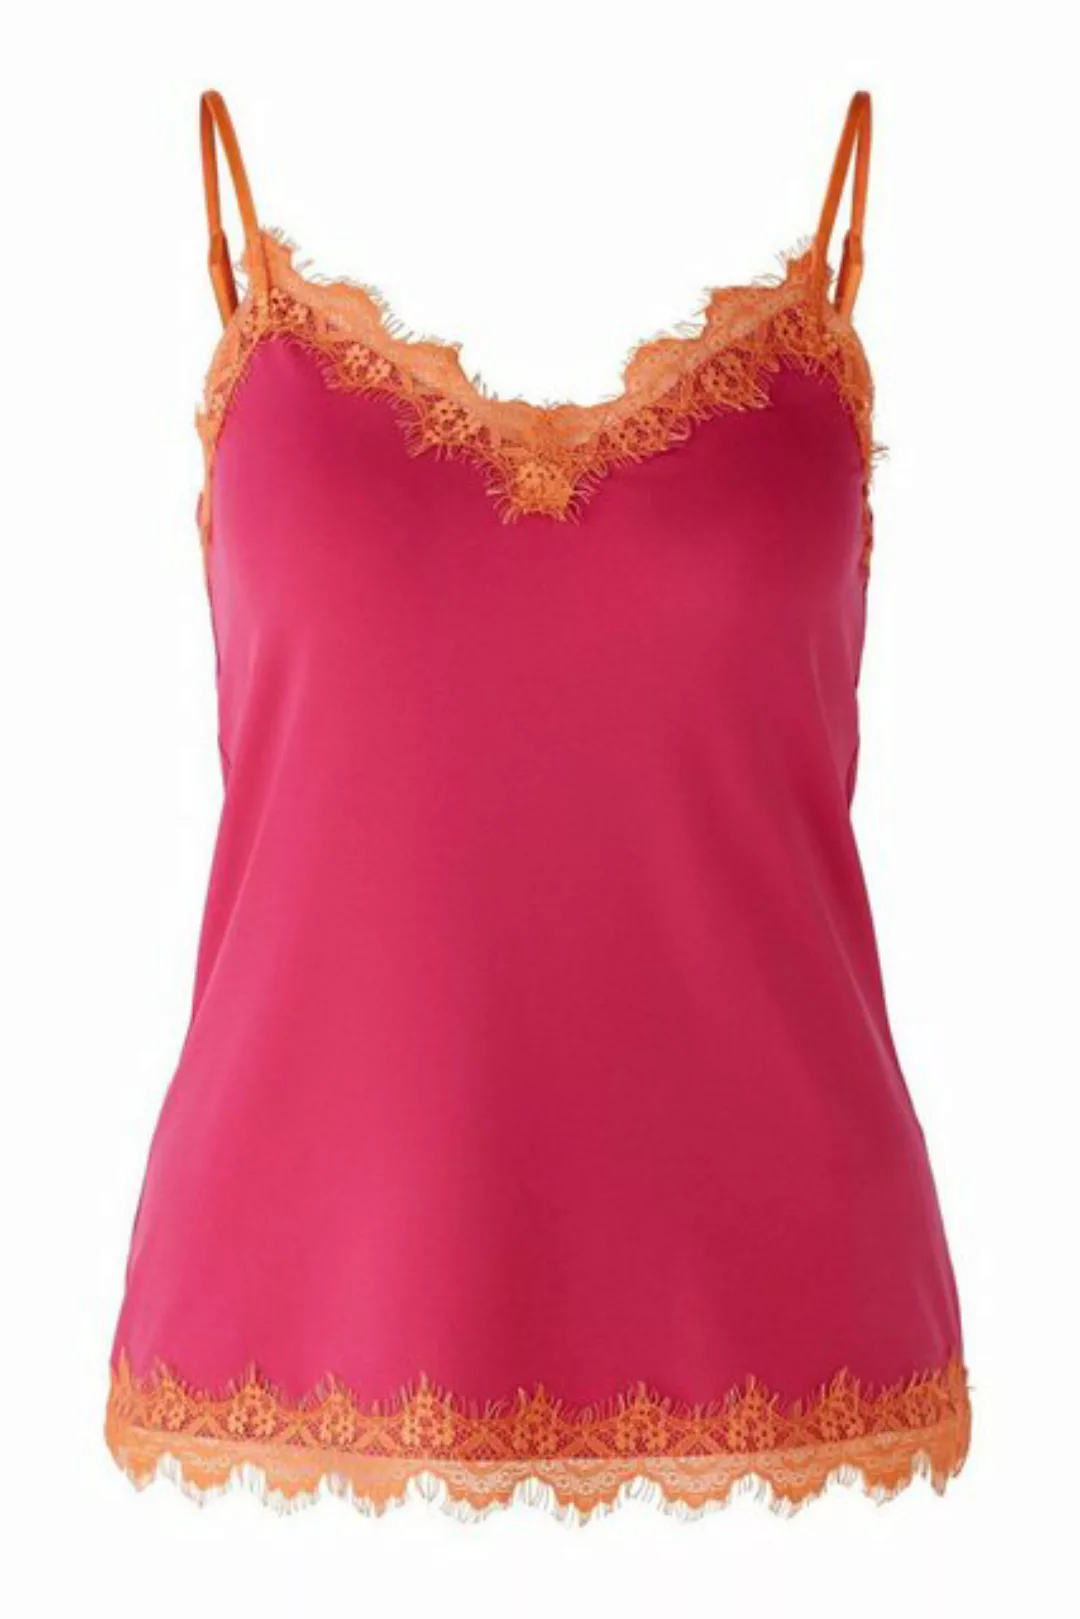 Oui T-Shirt Top, rose orange günstig online kaufen